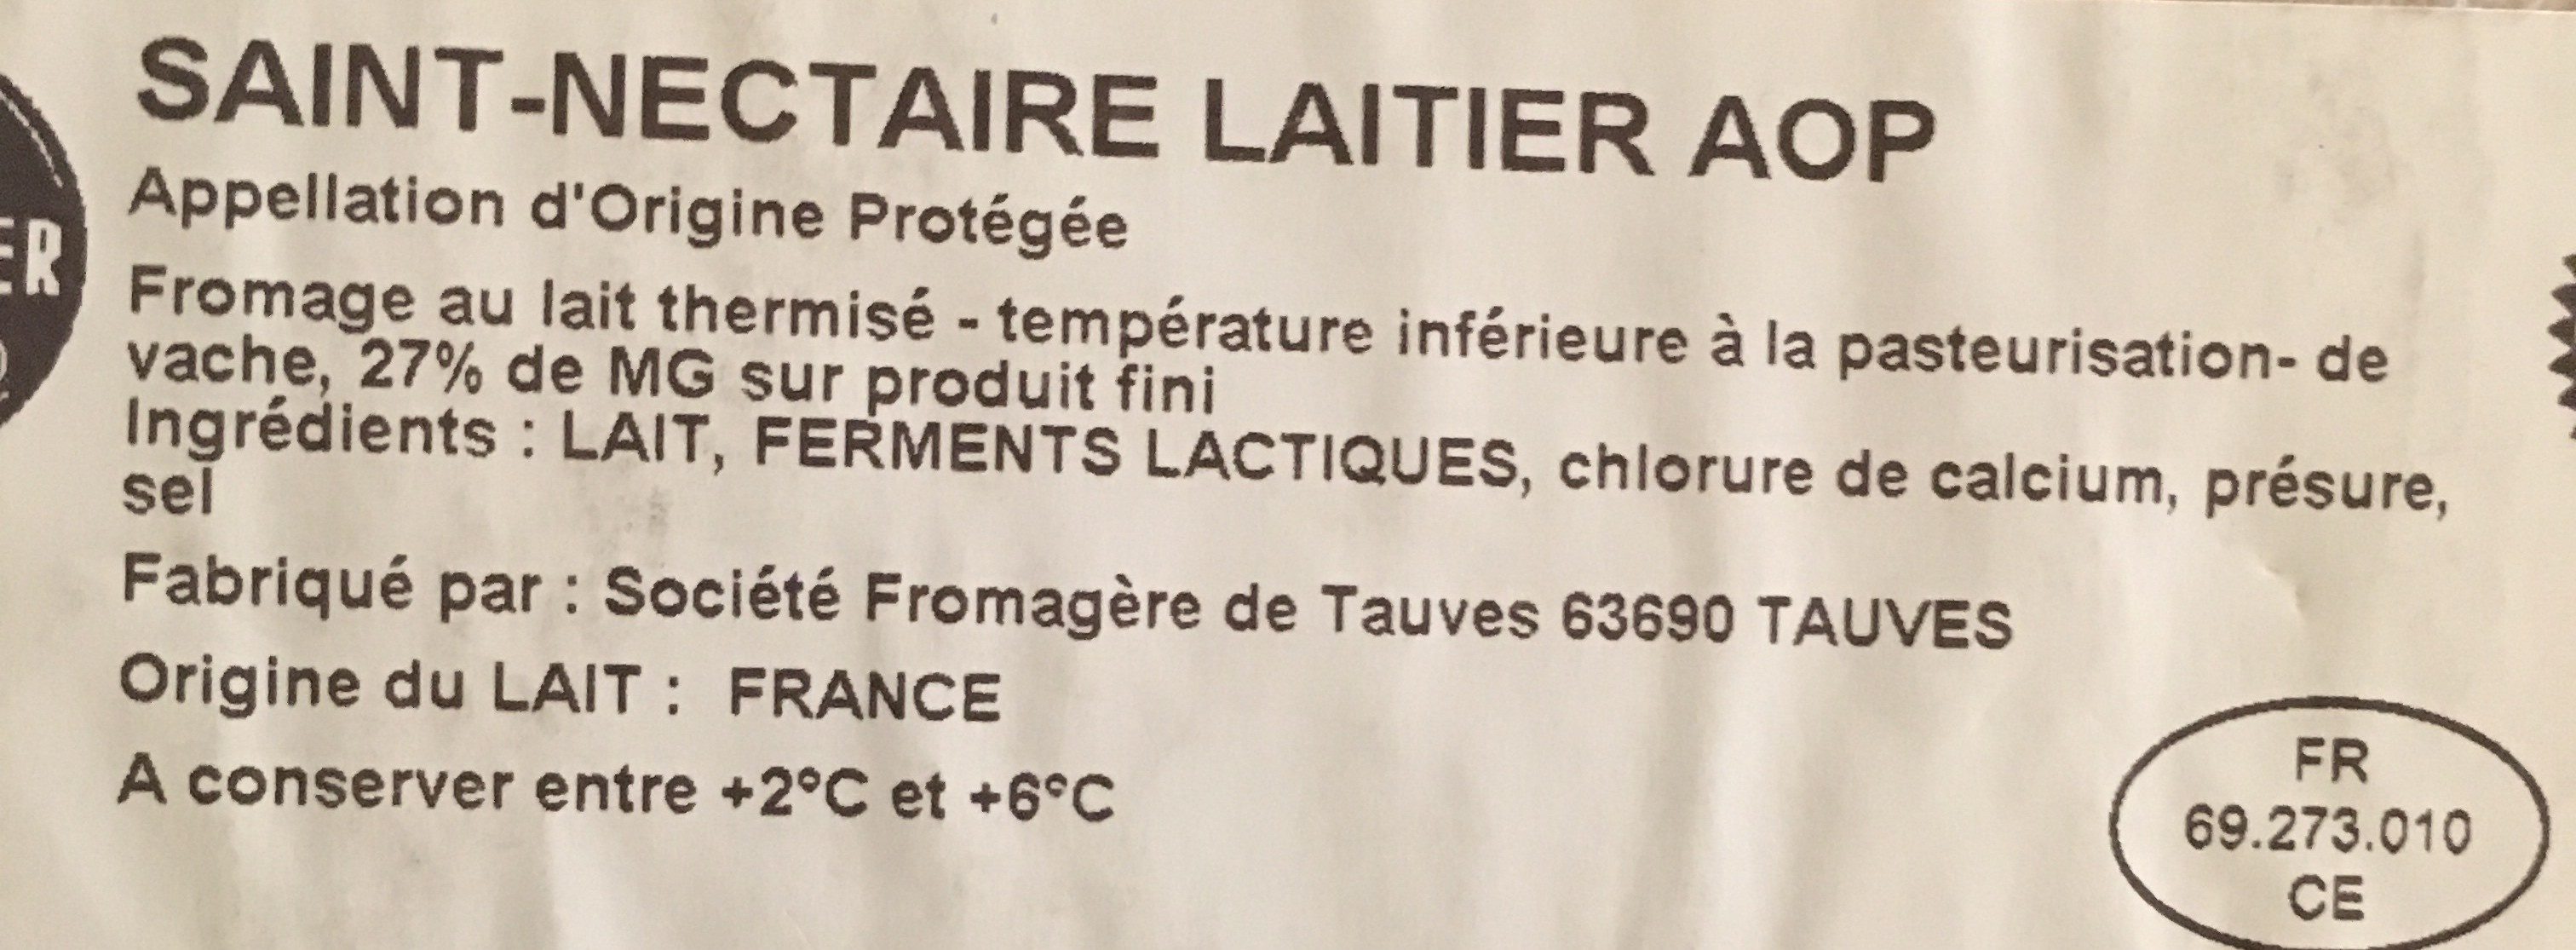 Saint Nectaire laitier AOP - Ingredients - fr